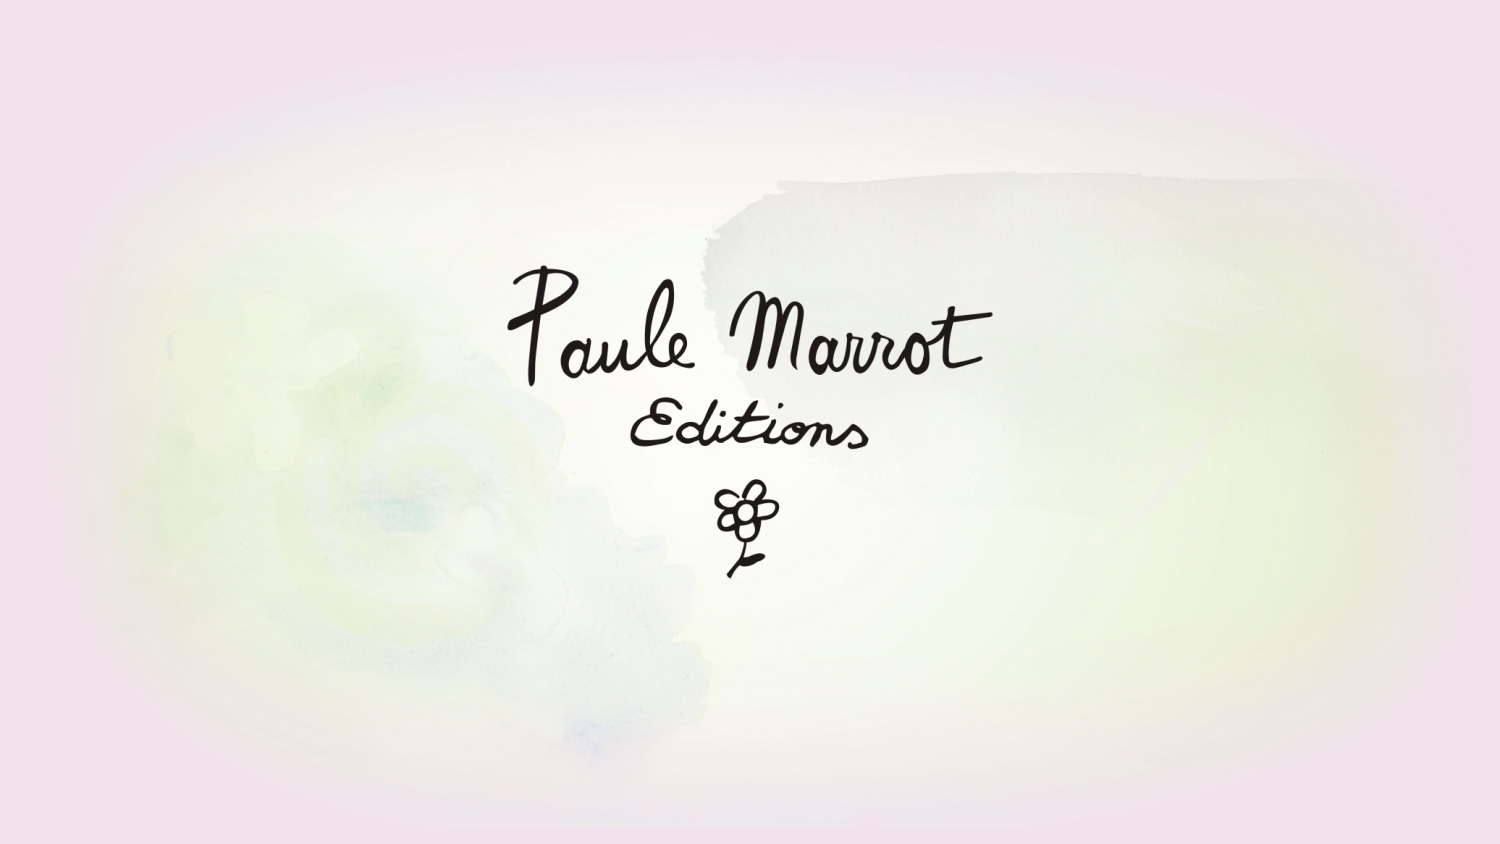 Editions Paule Marrot